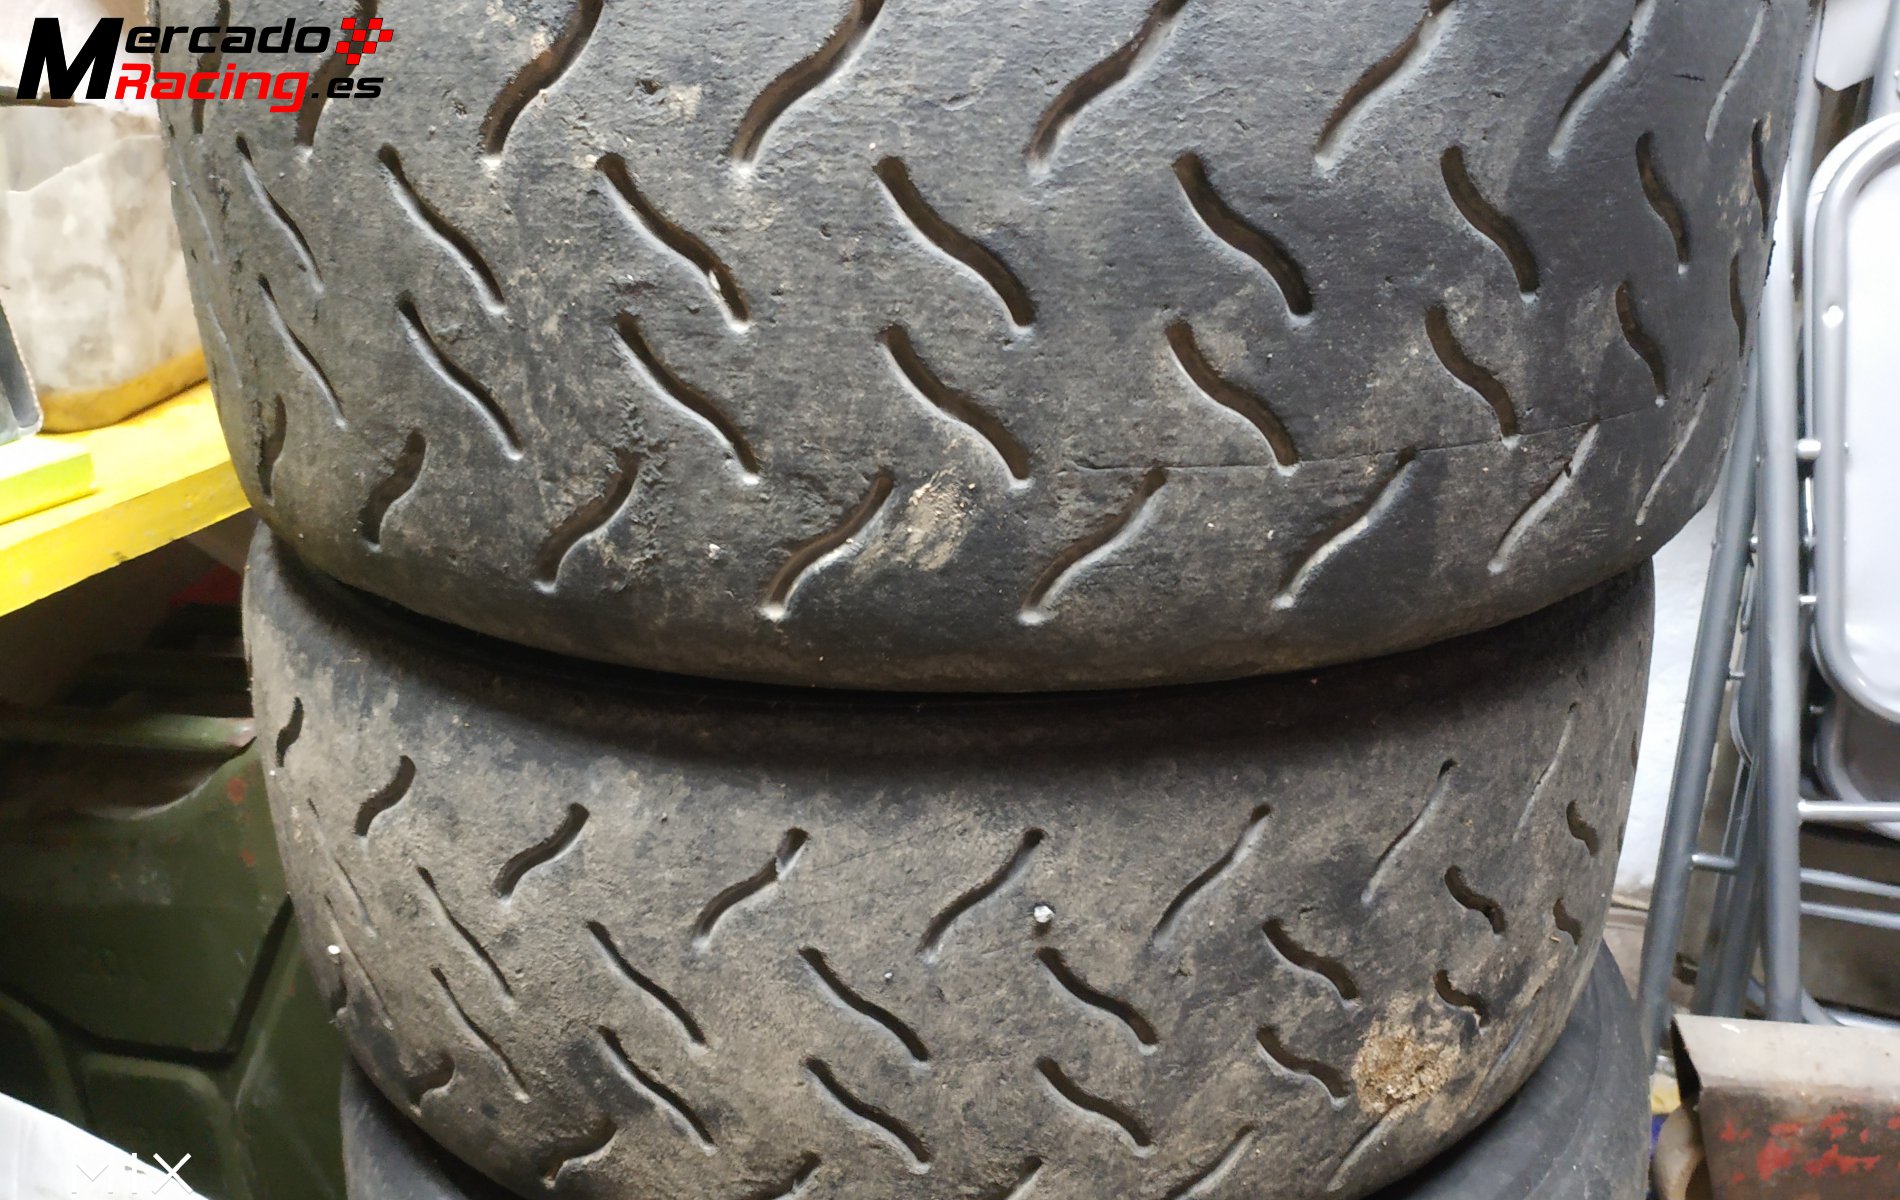 Hankook mrf tyres 